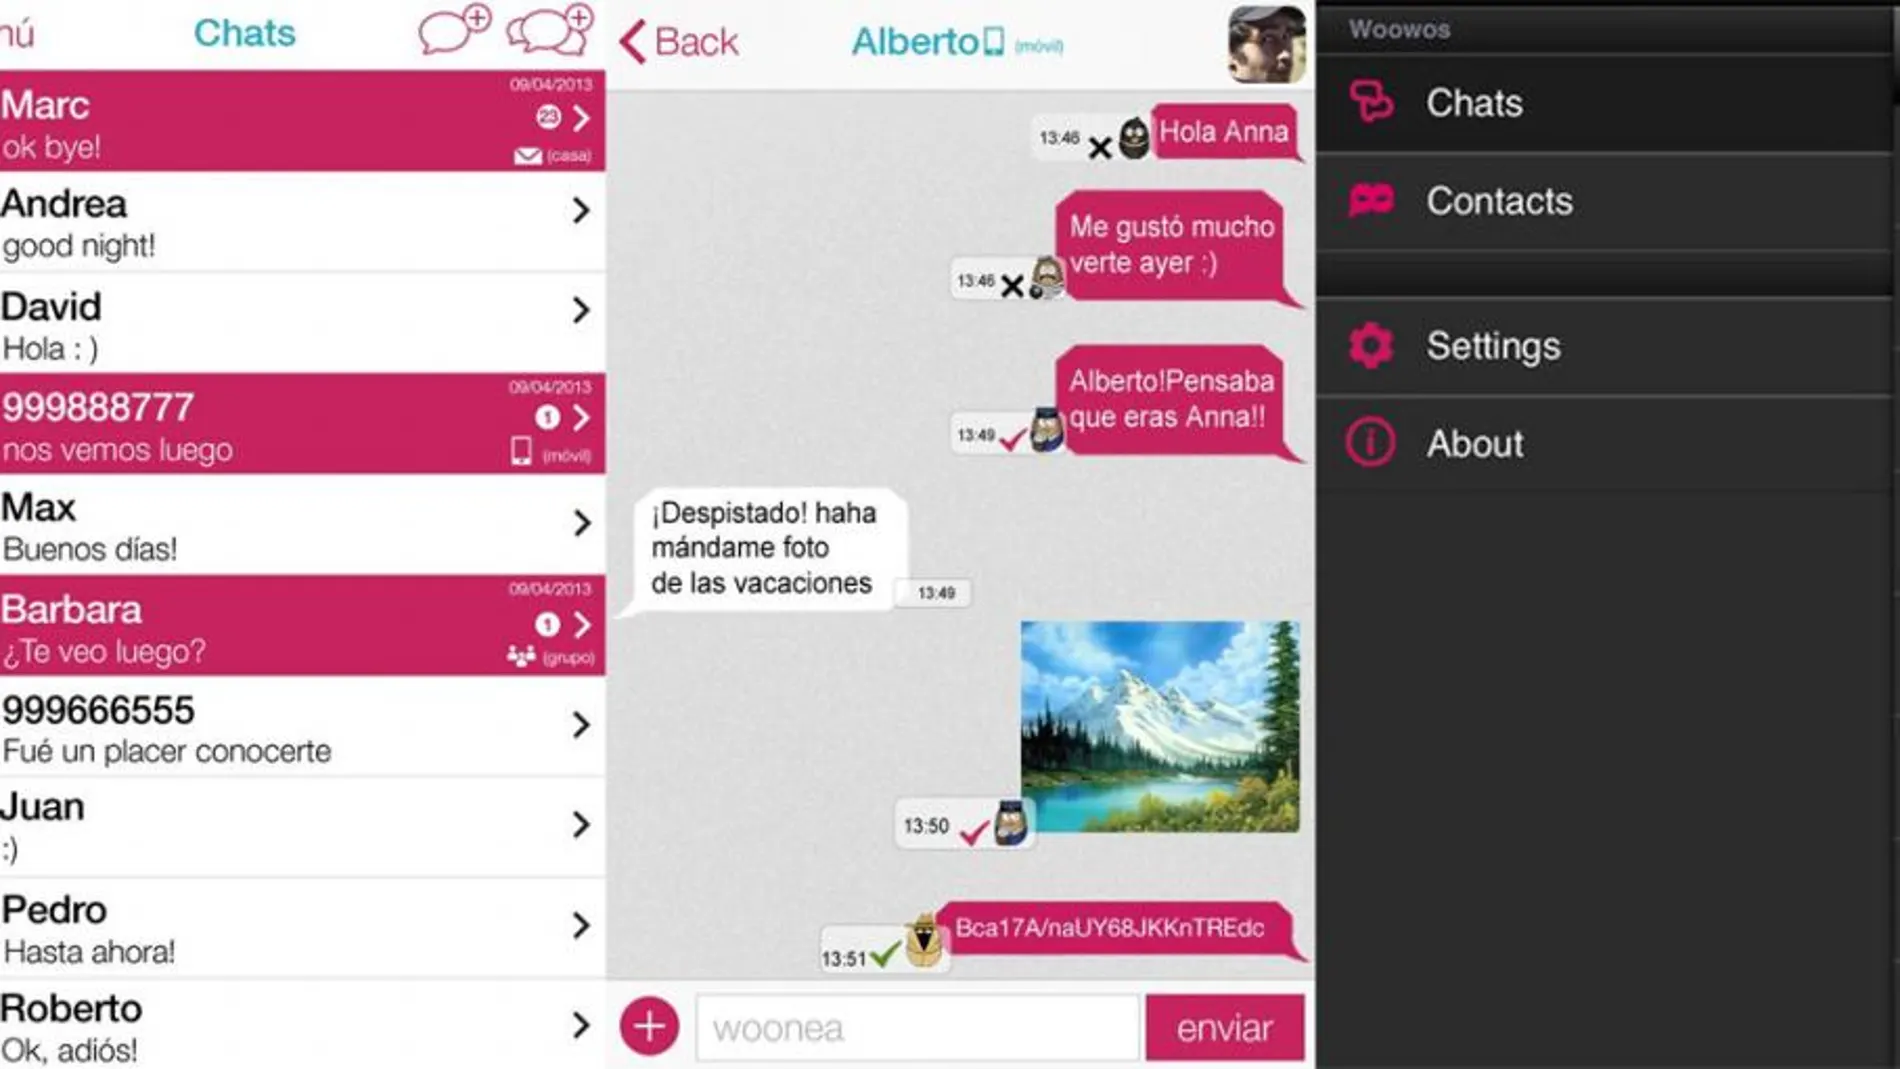 Woowos, un WhatsApp que permite borrar nuestros mensajes en el móvil del que los recibe